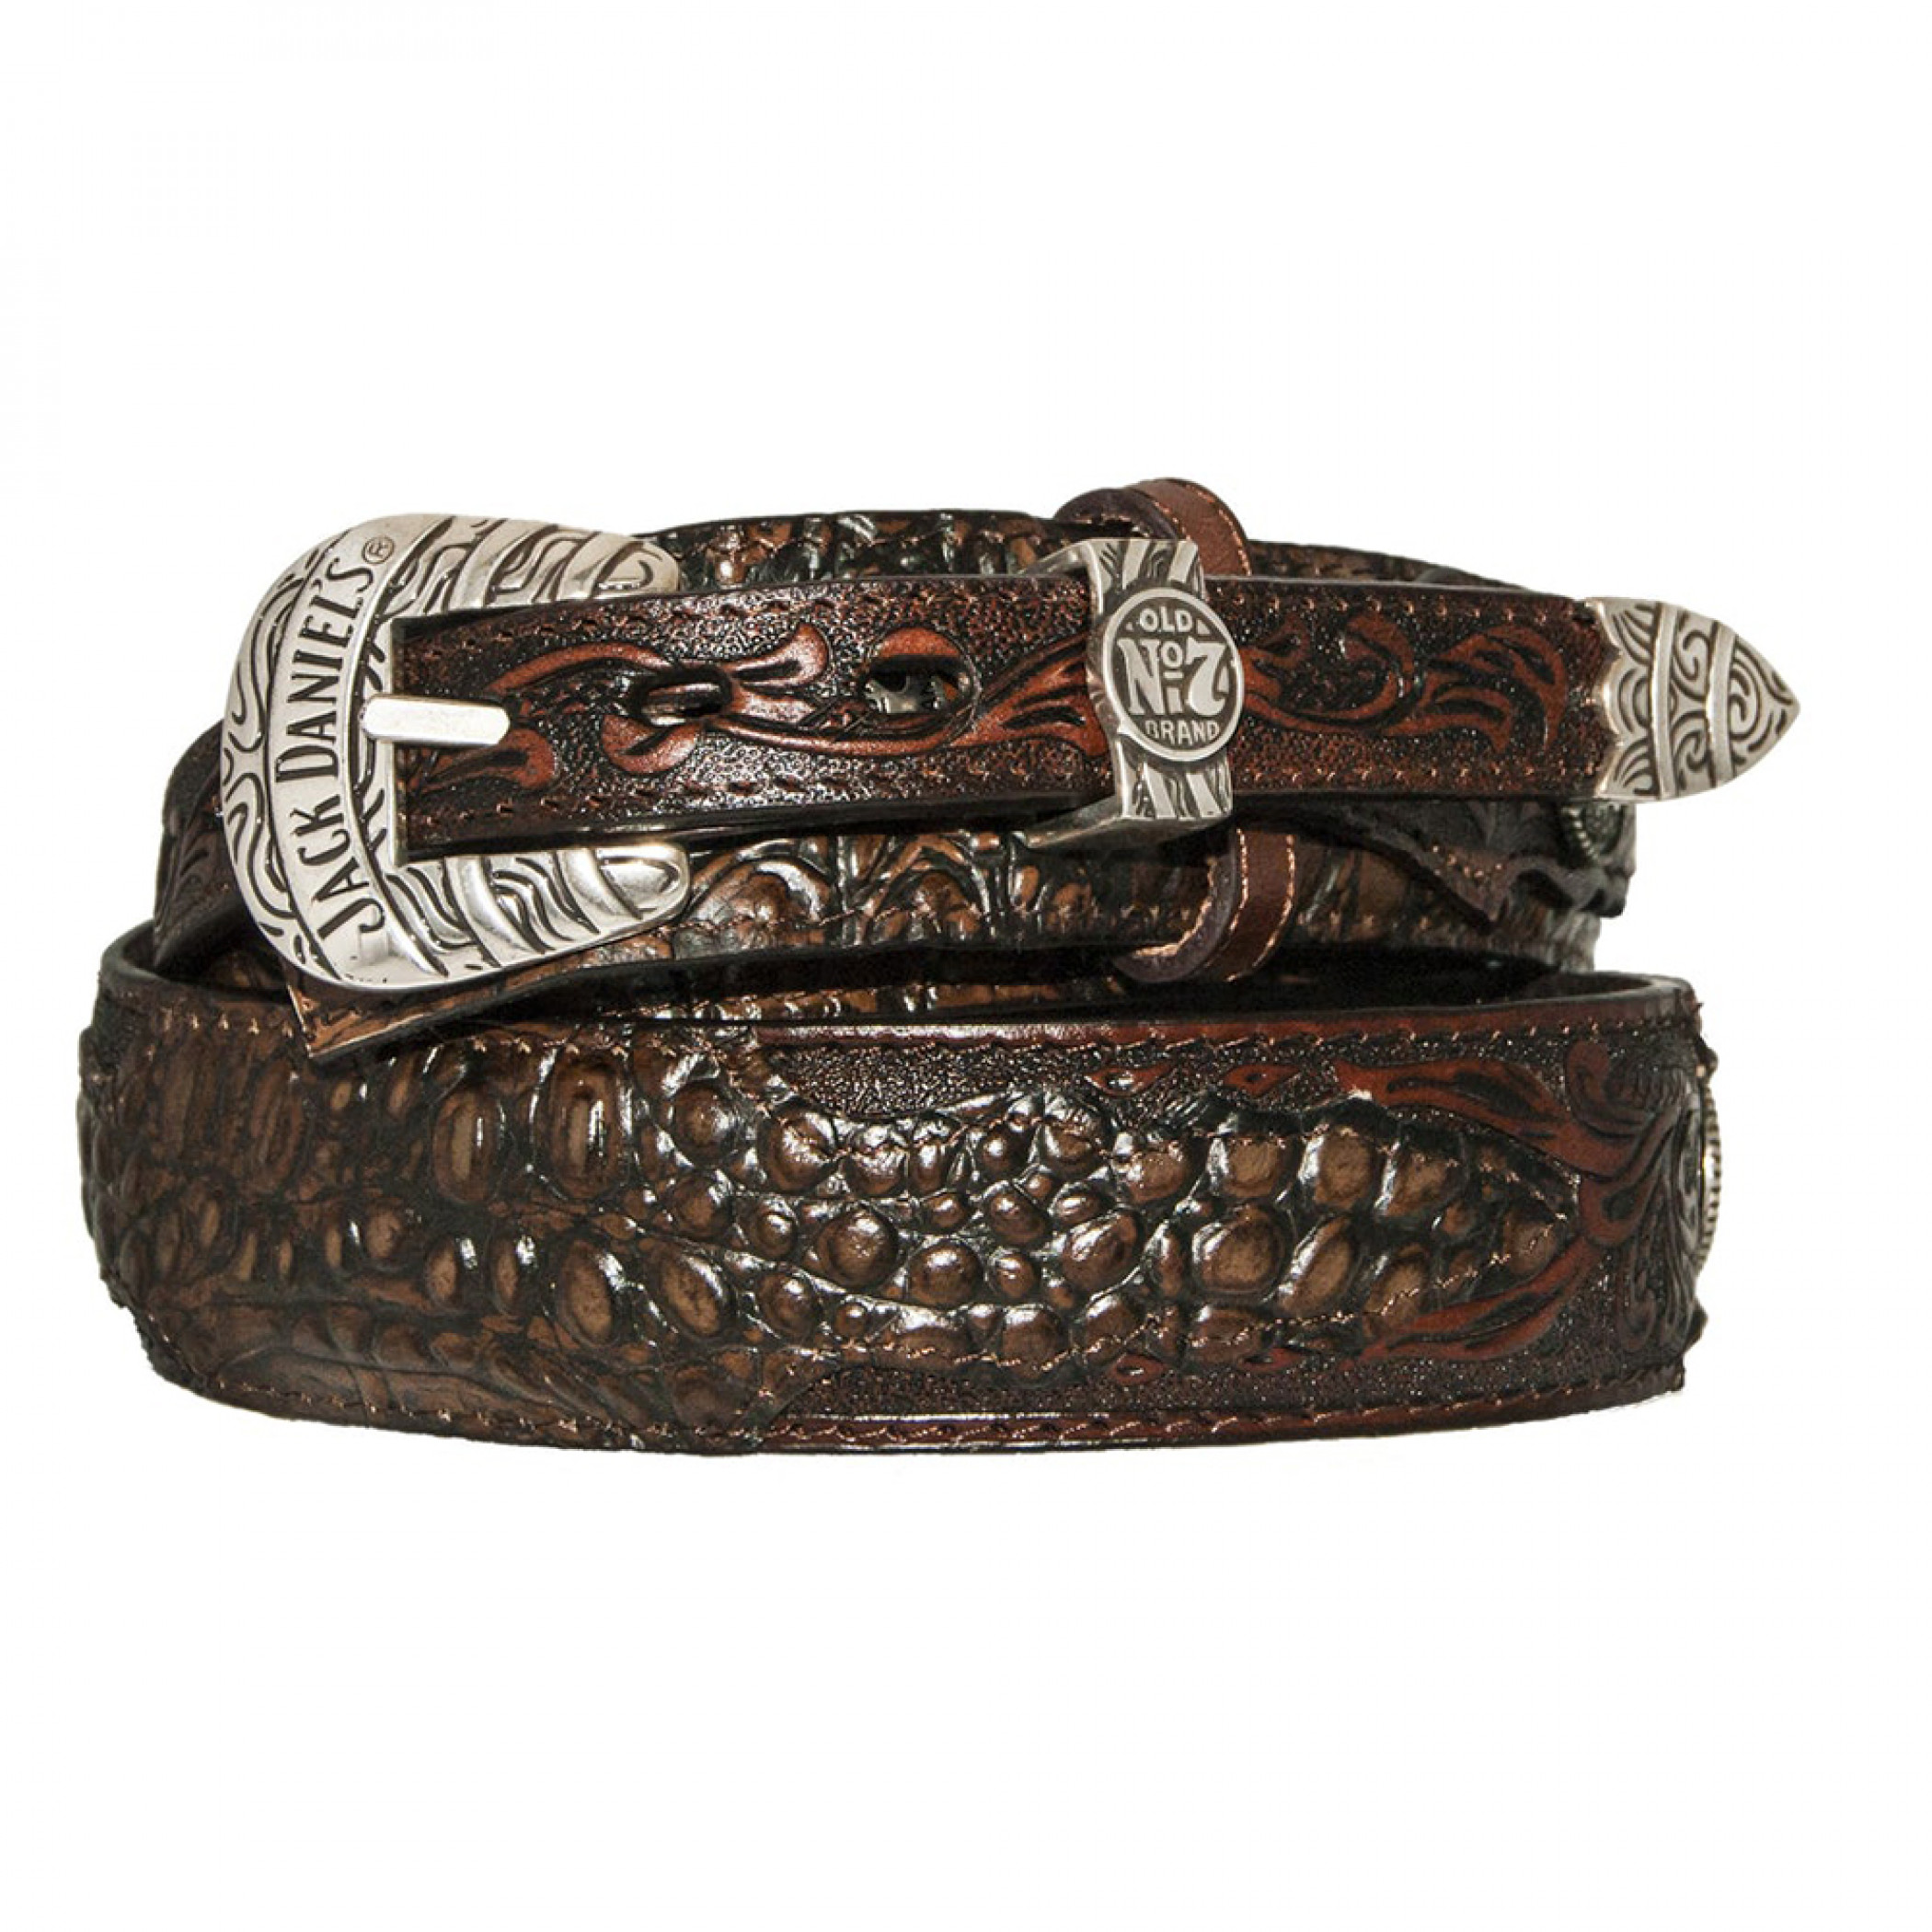 Jack Daniel's Brown Leather Alligator Embossed 1.5' Ranger Belt